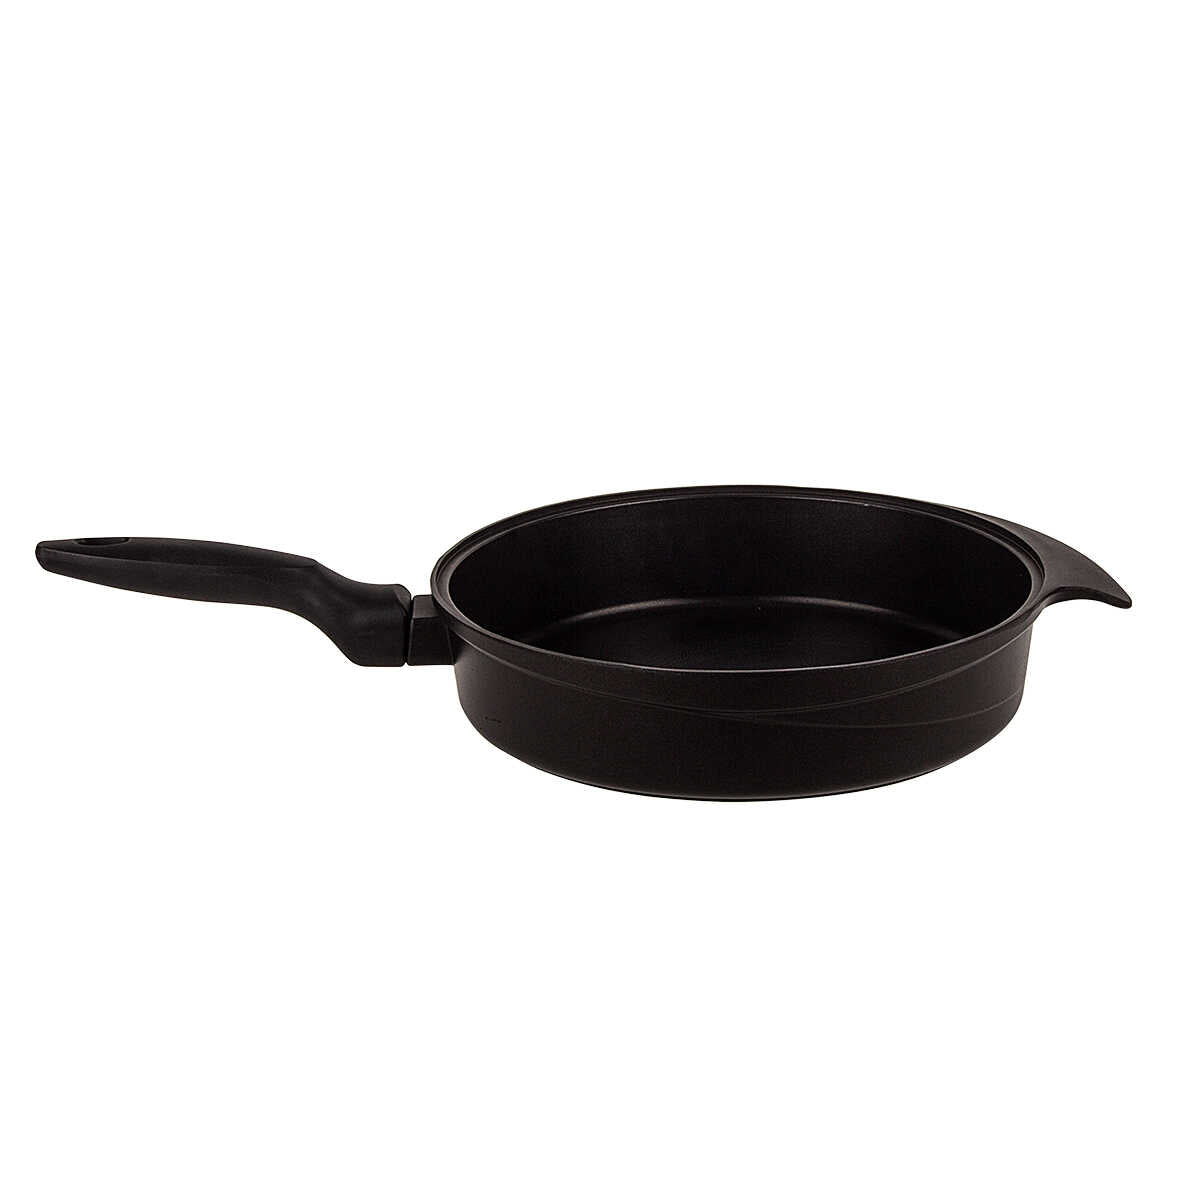 Aryıldız Flipper Black 28-6 cm Pan